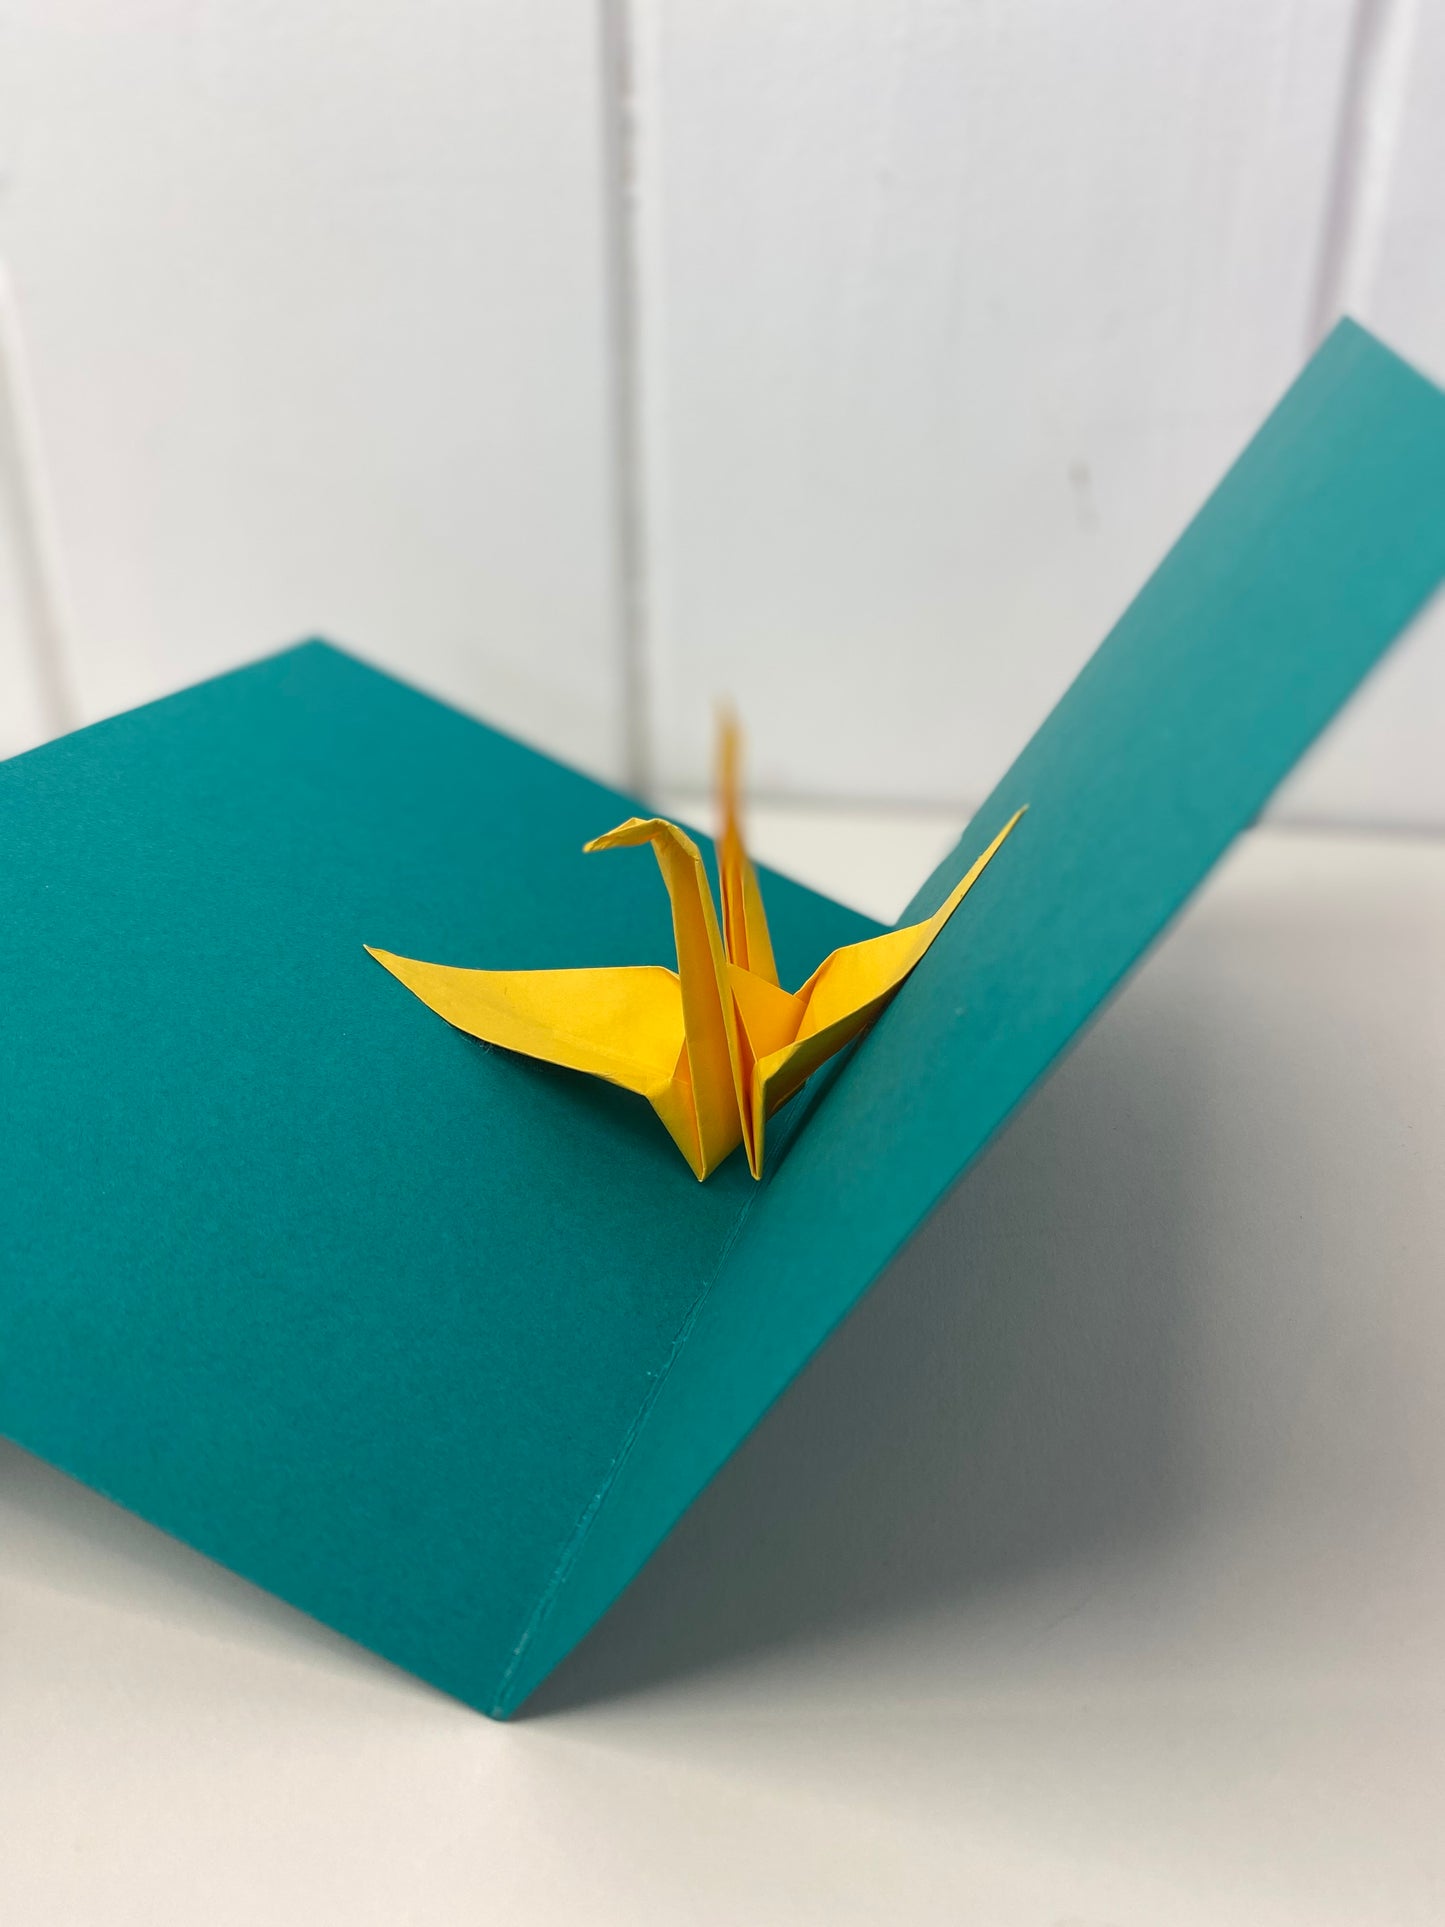 Mini Make: Pop up Origami Crane Card